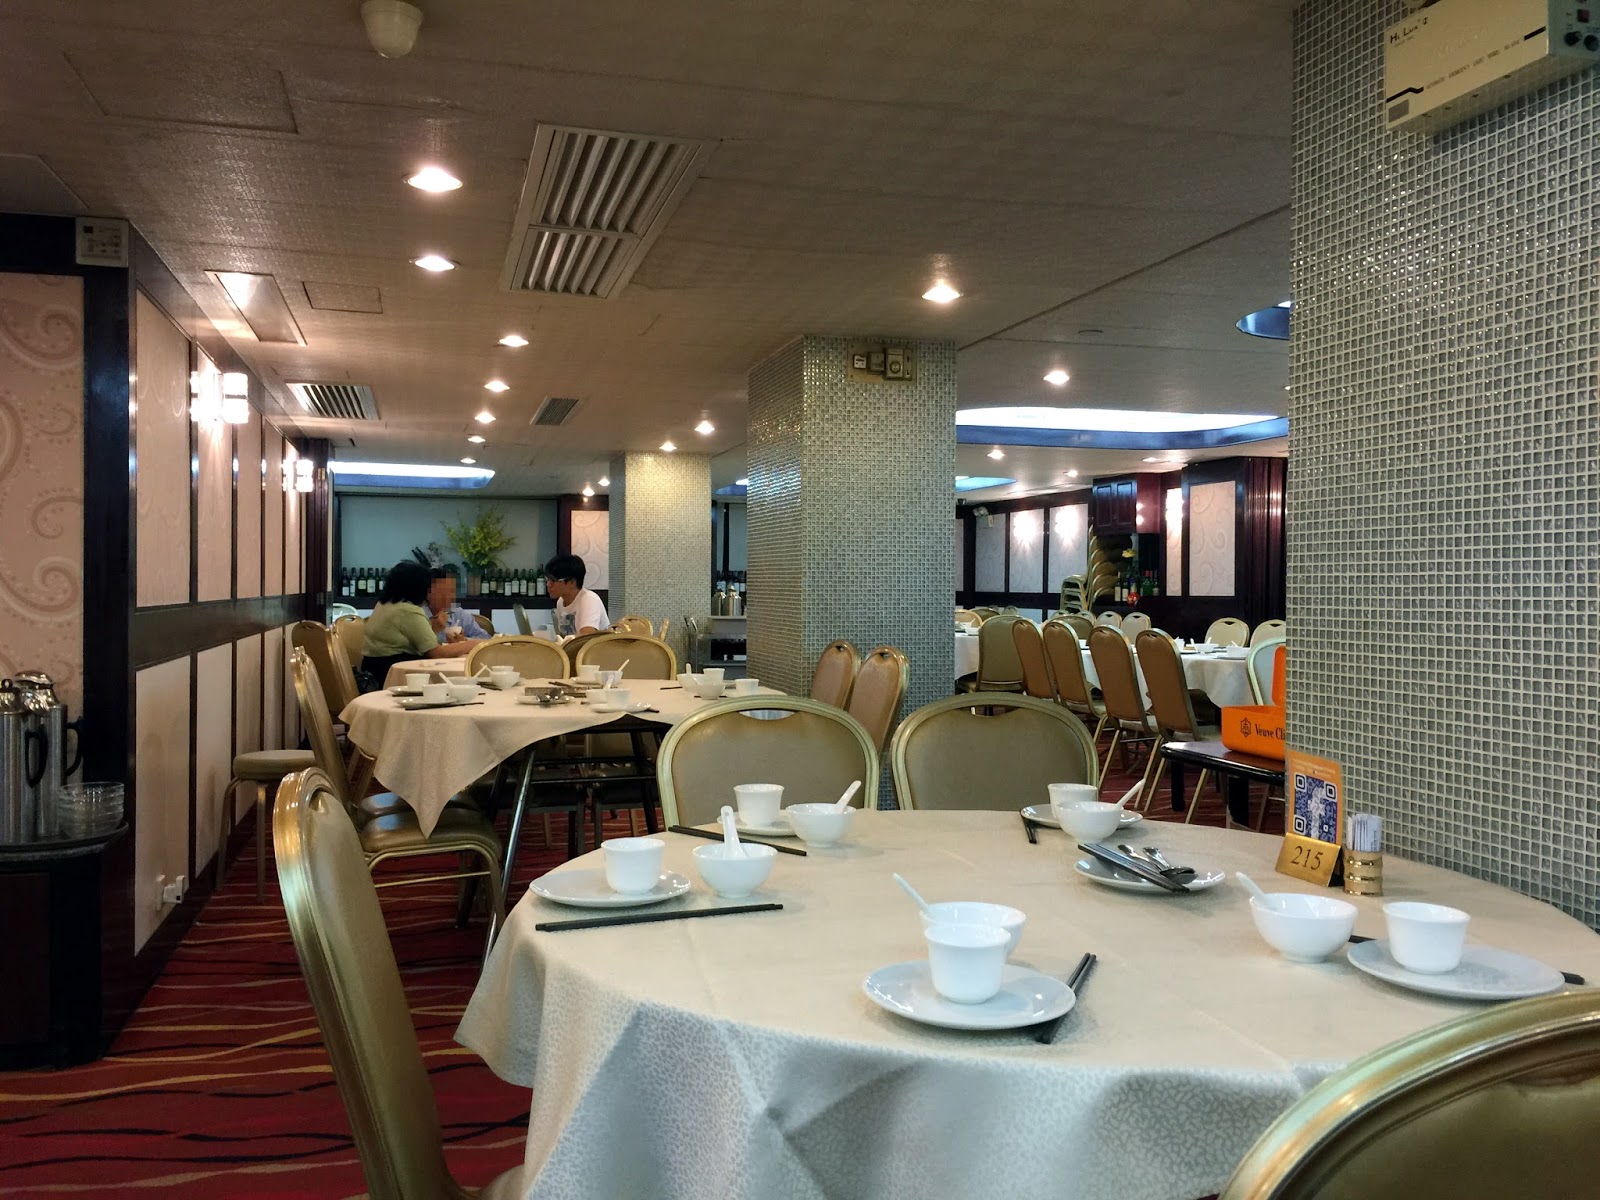 Sang Kee Seafood Restaurant 生記海鮮飯店 Hong Kong China